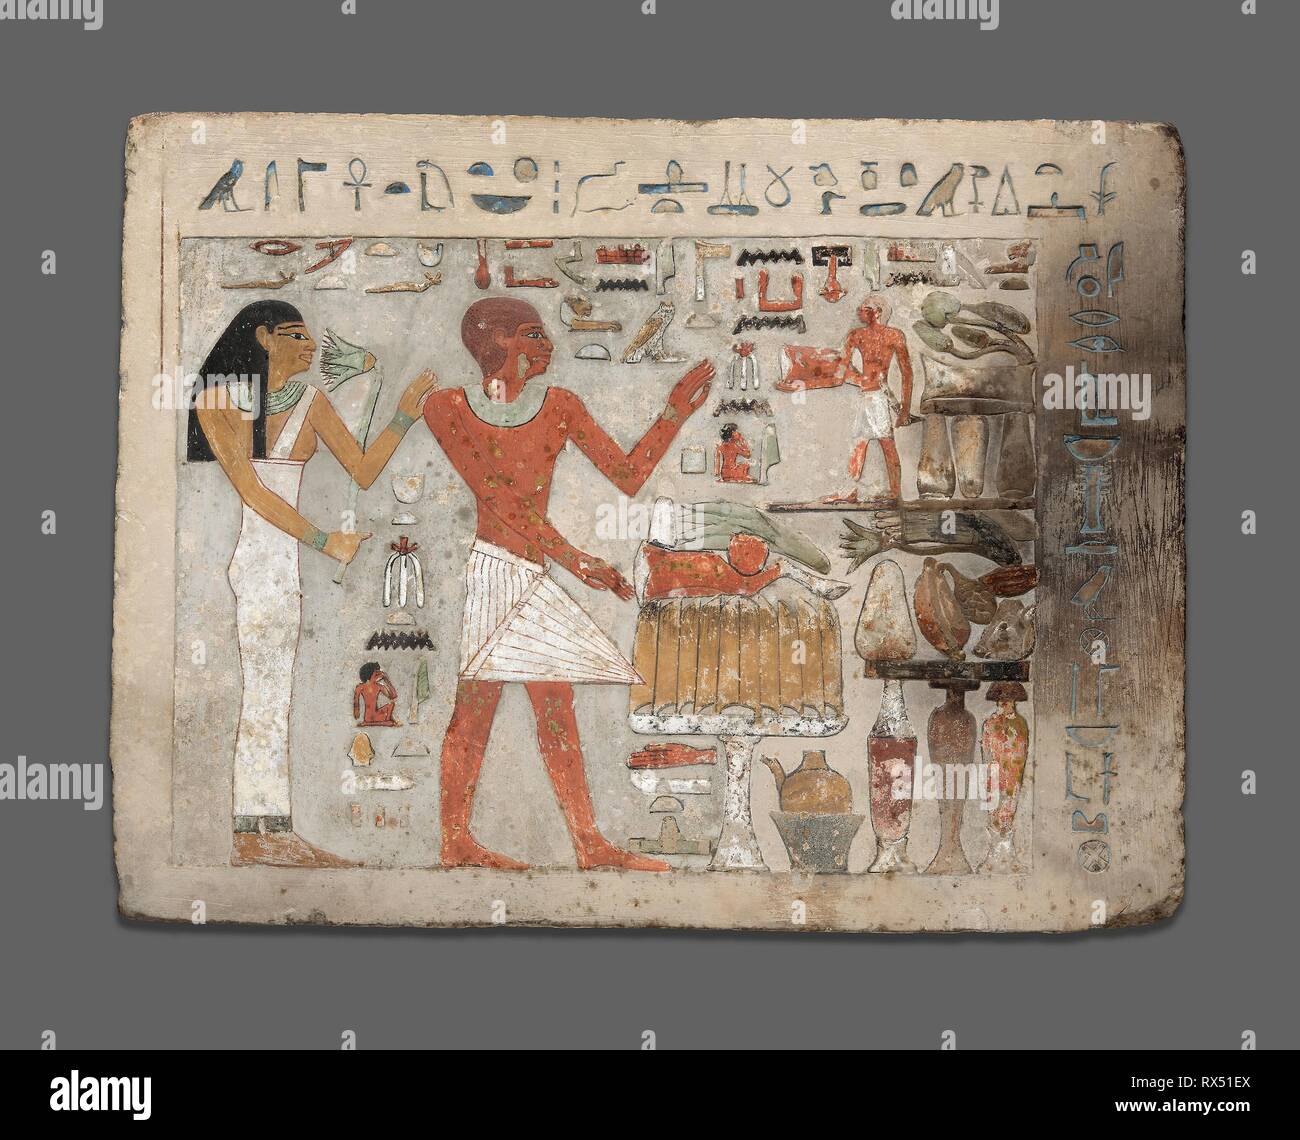 Stela di Amenemhat e Hemet. Egyptian; probabilmente da Tebe. Data: 1956 BC-1877 BC. Dimensioni: 31,1 × 41,7 × 6,7 cm (12 1/4 × 16 3/8 x 2 5/8 in.). Il calcare e pigmento. Provenienza: Egitto. Museo: Chicago Art Institute. Autore: antica egiziana. Foto Stock